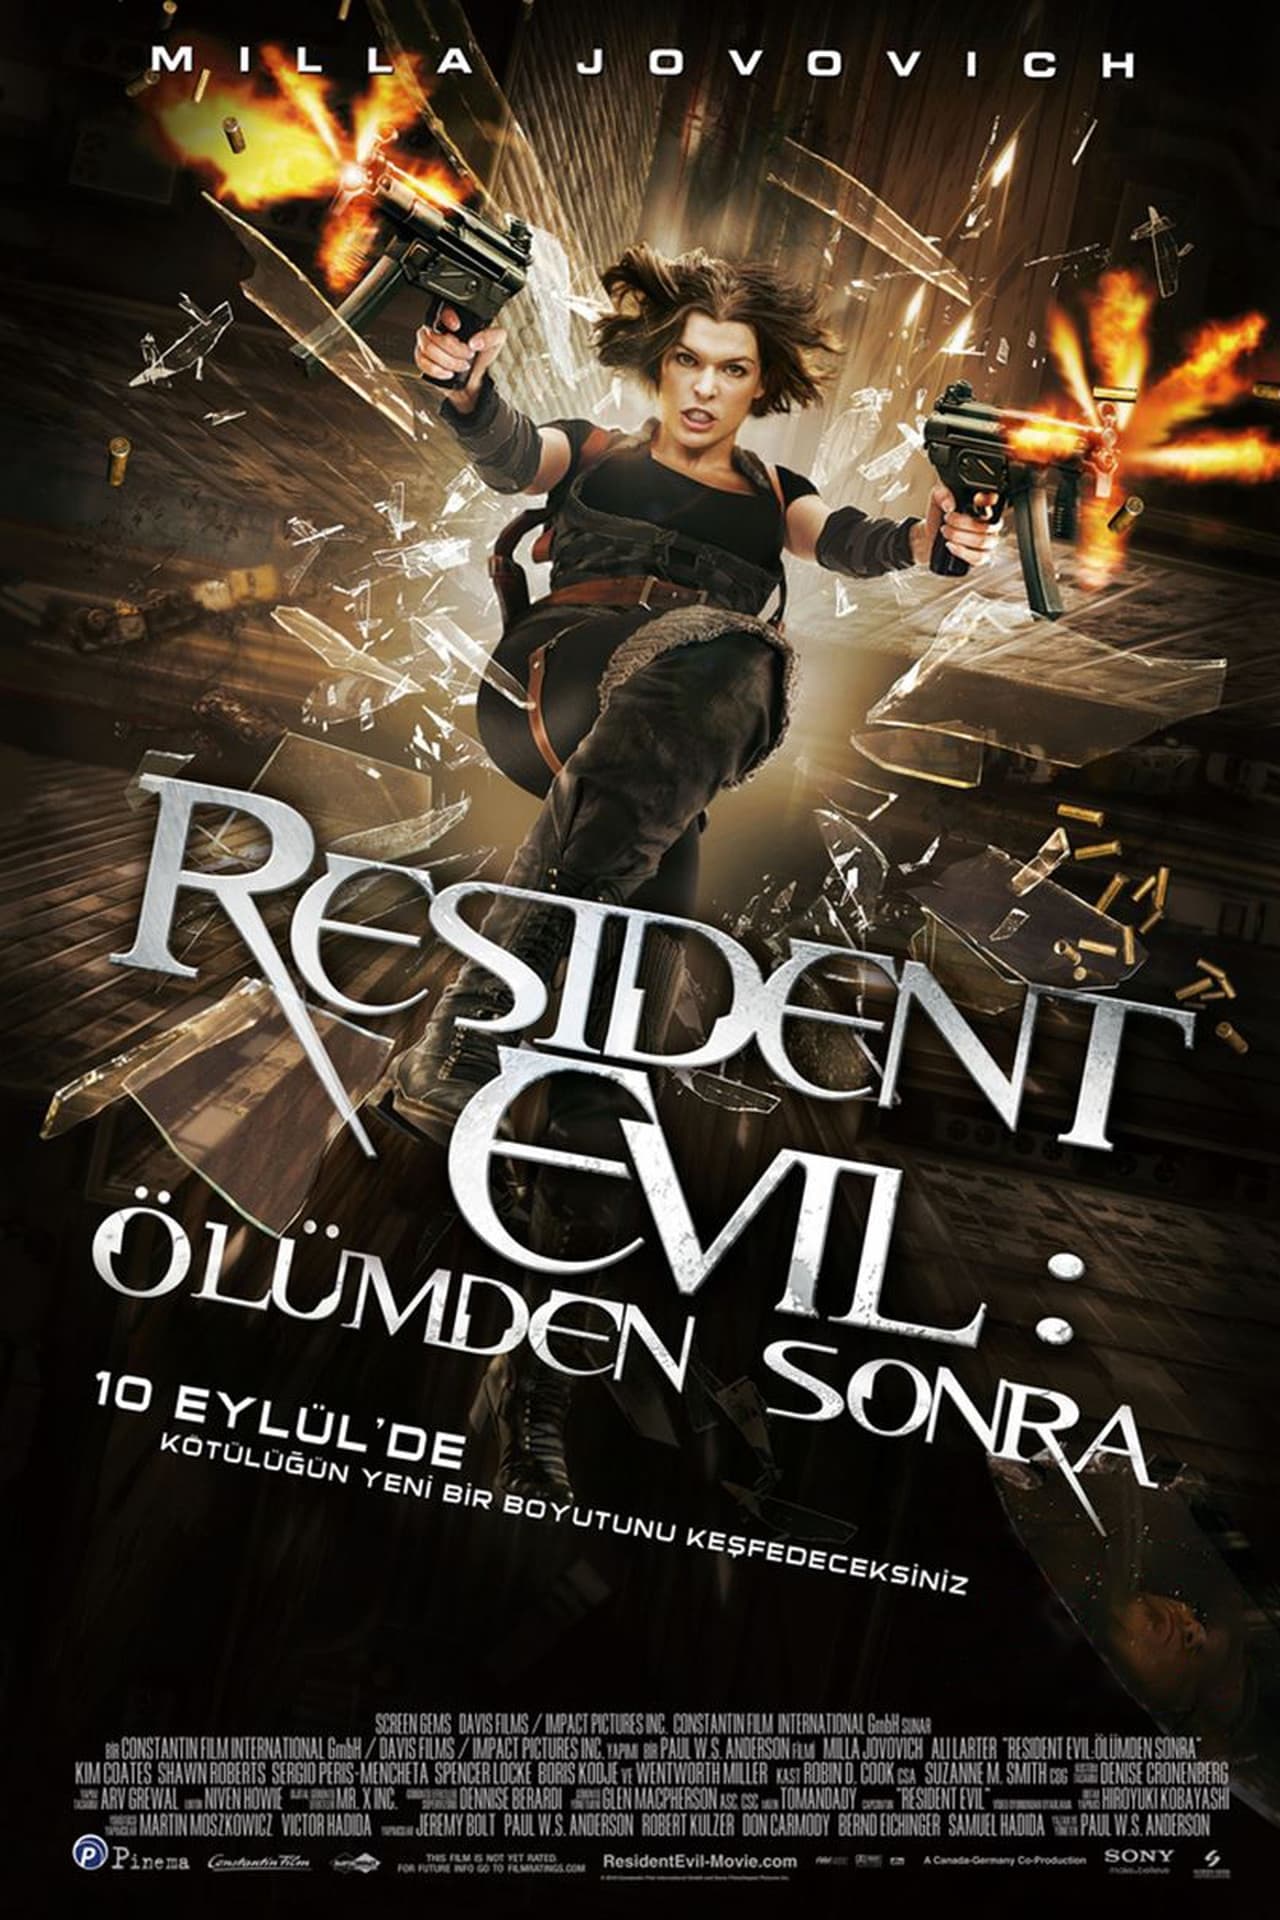 Resident Evil: Afterlife (2010) 640Kbps 23.976Fps 48Khz 5.1Ch BluRay Turkish Audio TAC